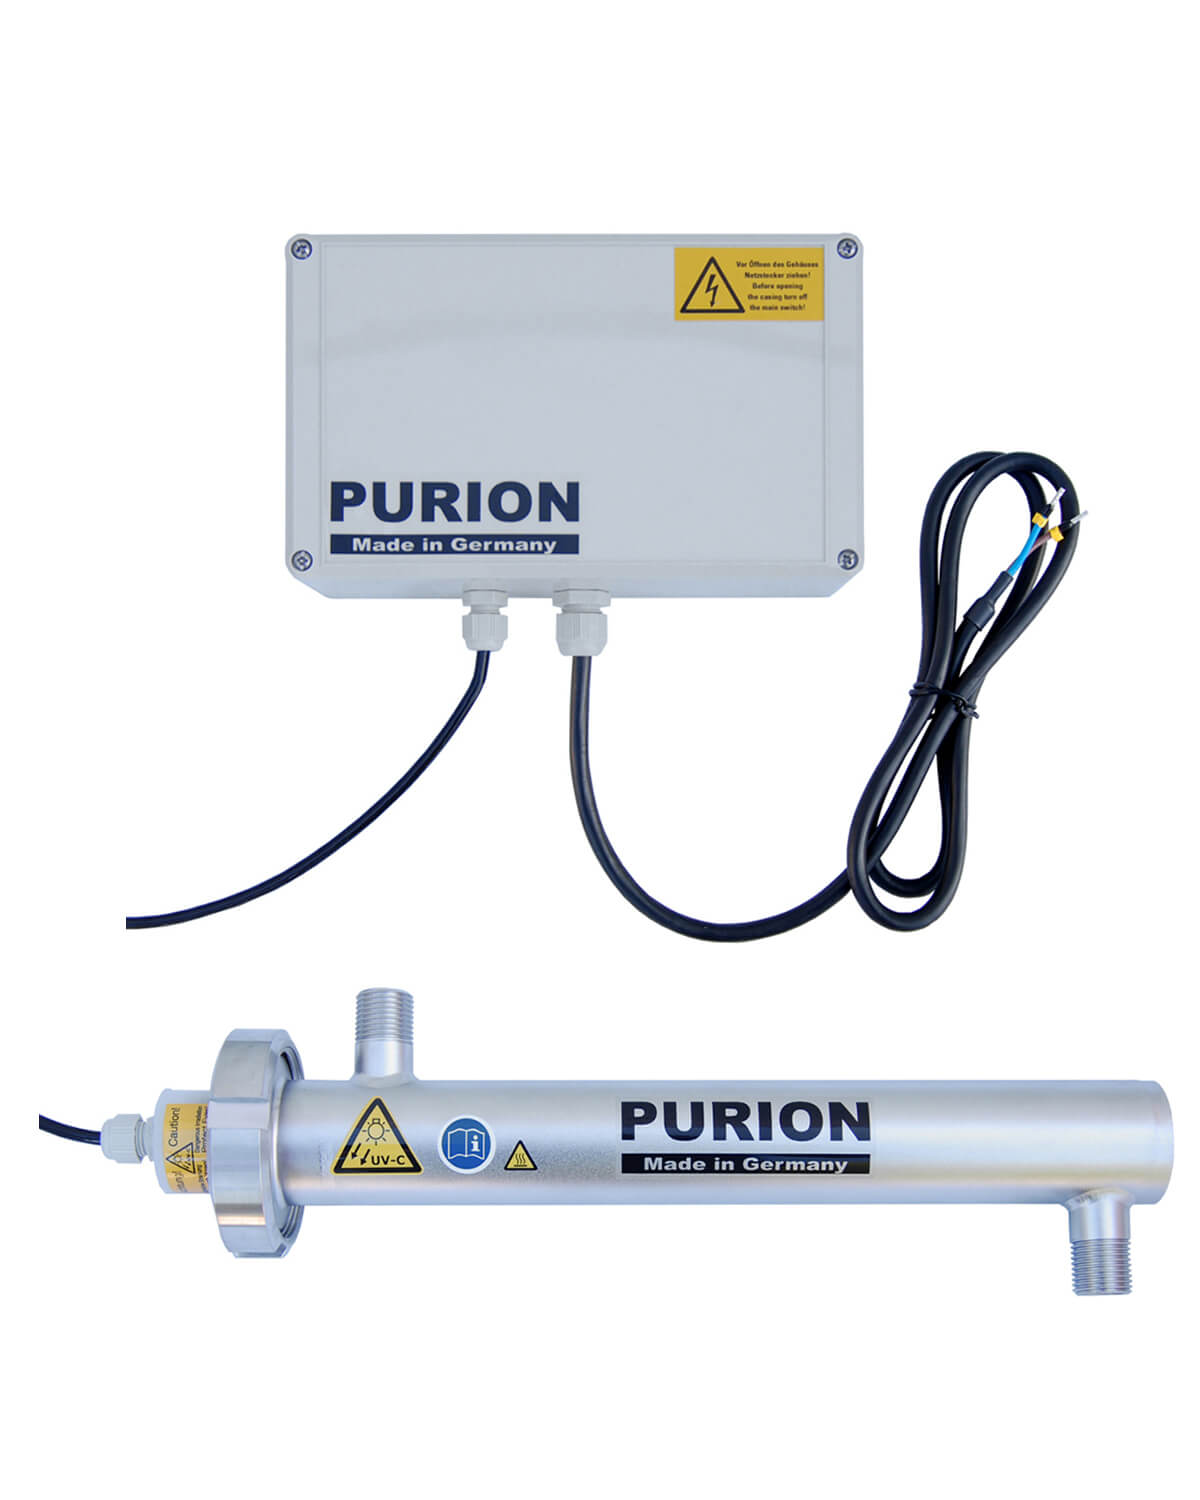 Das Produkt der PURION GmbH, PURION 500 PRO Basic, wird zur Desinfizierung von Flüssigkeiten eingesetzt.